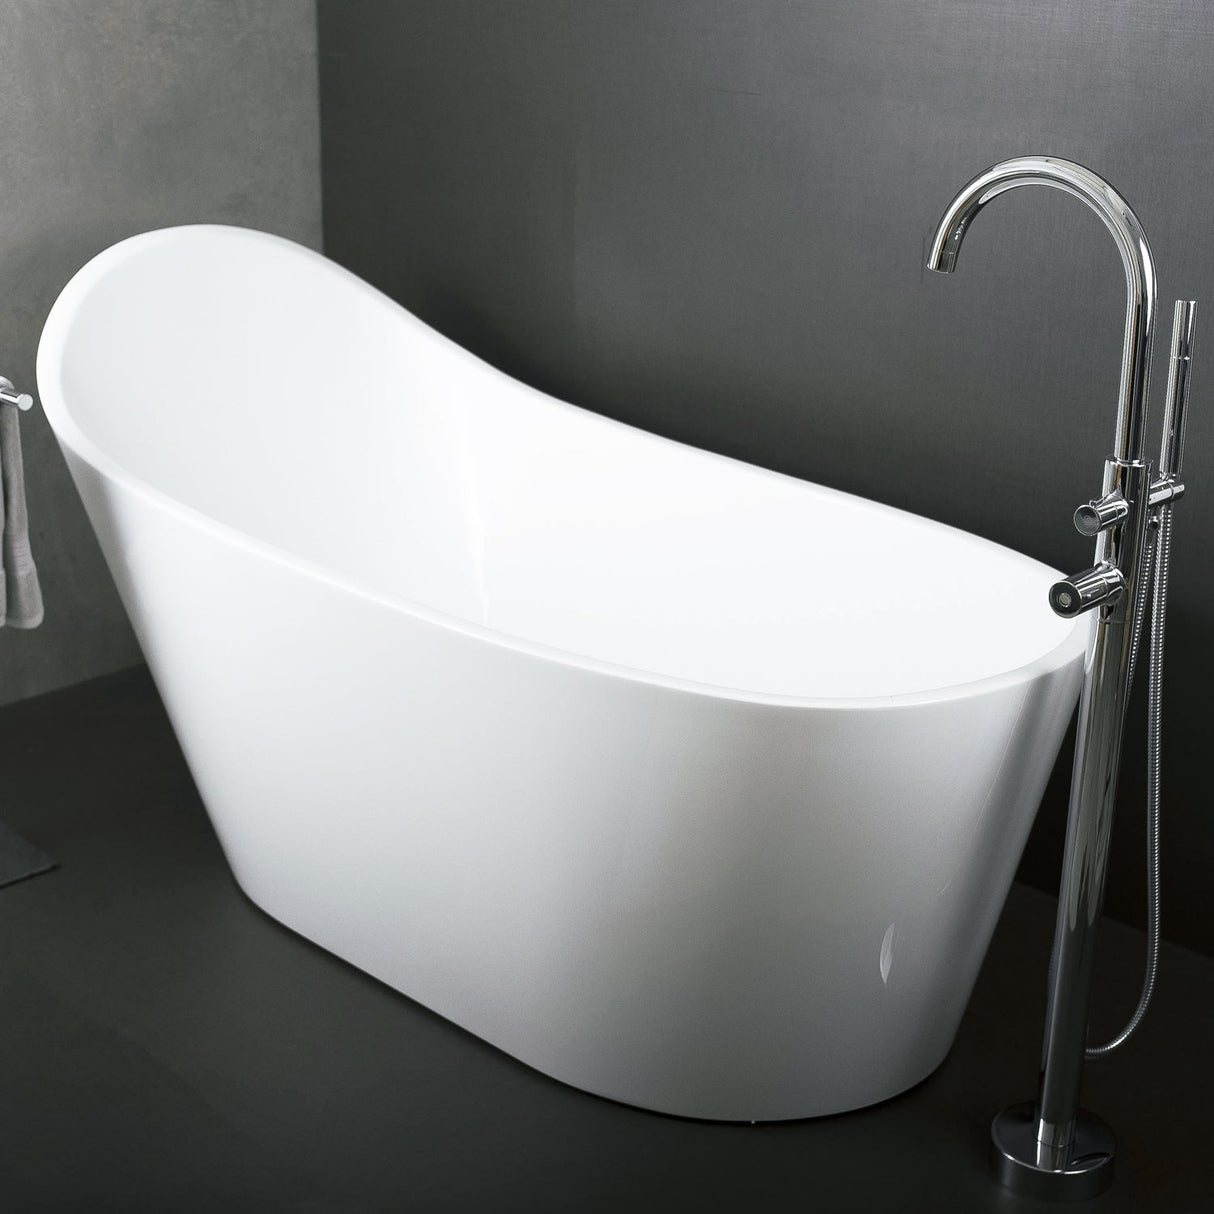 DAX Acrylic Oval High Back Freestanding Bathtub, White BT-8089